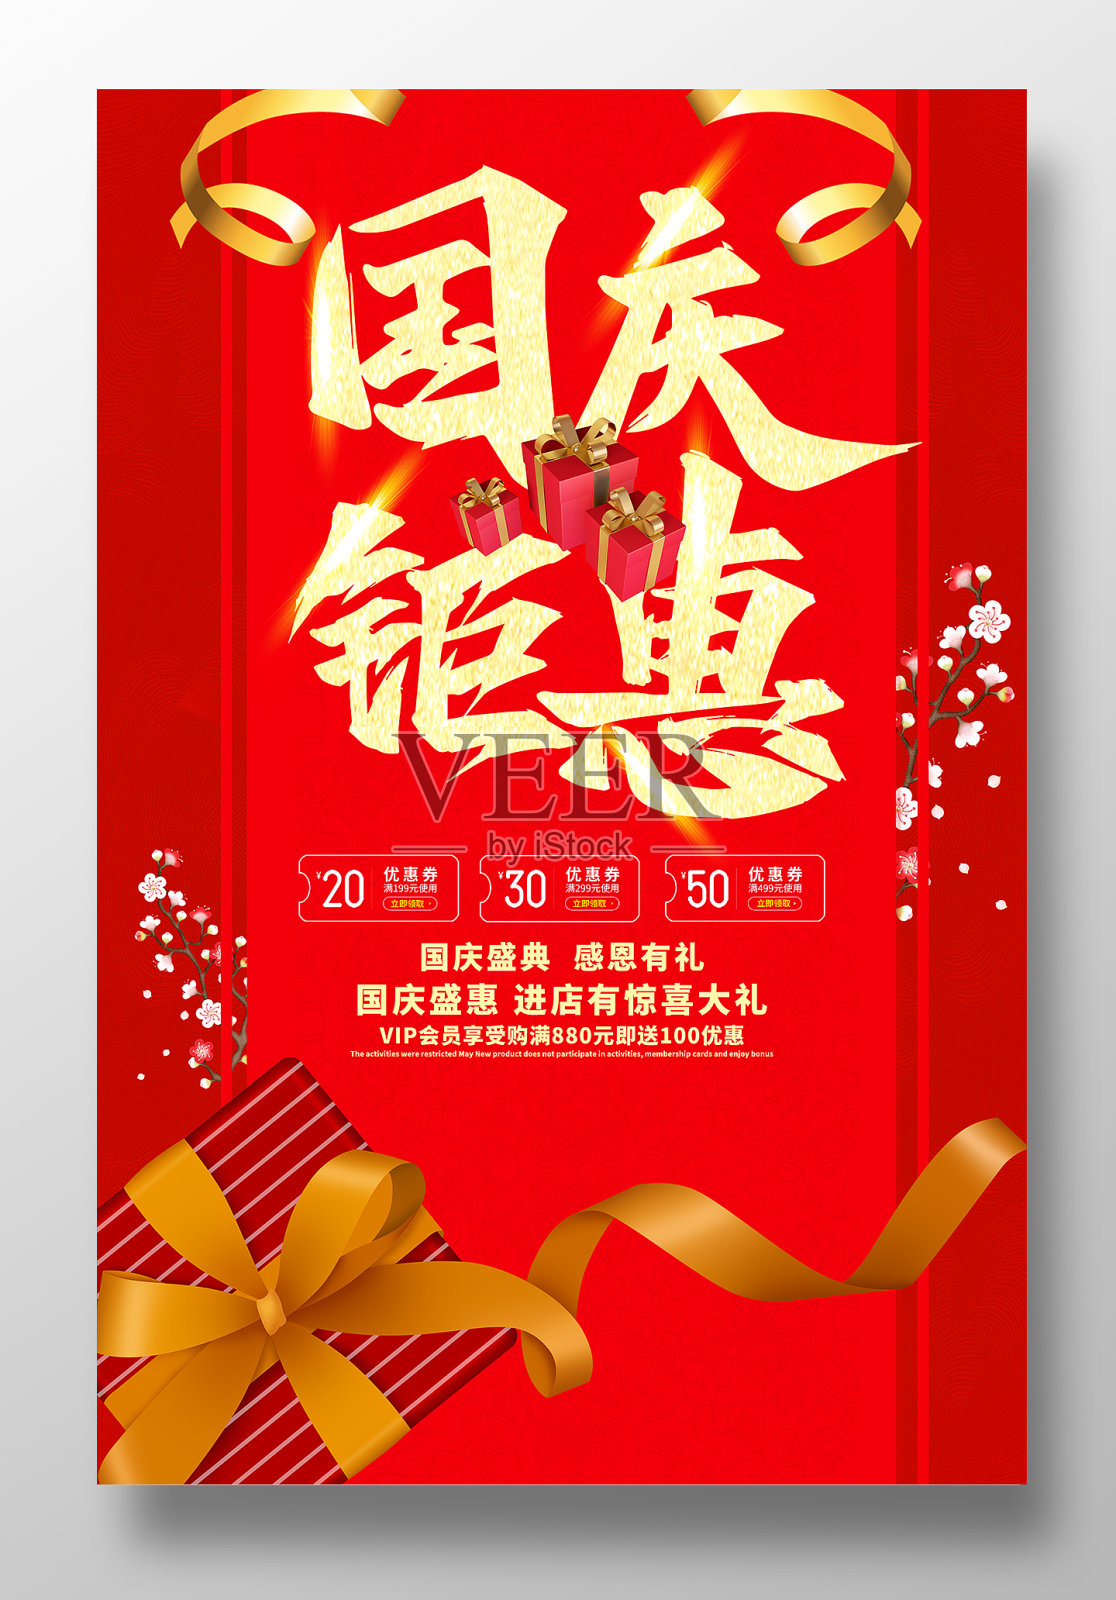 红色大气国庆节促销海报设计模板素材